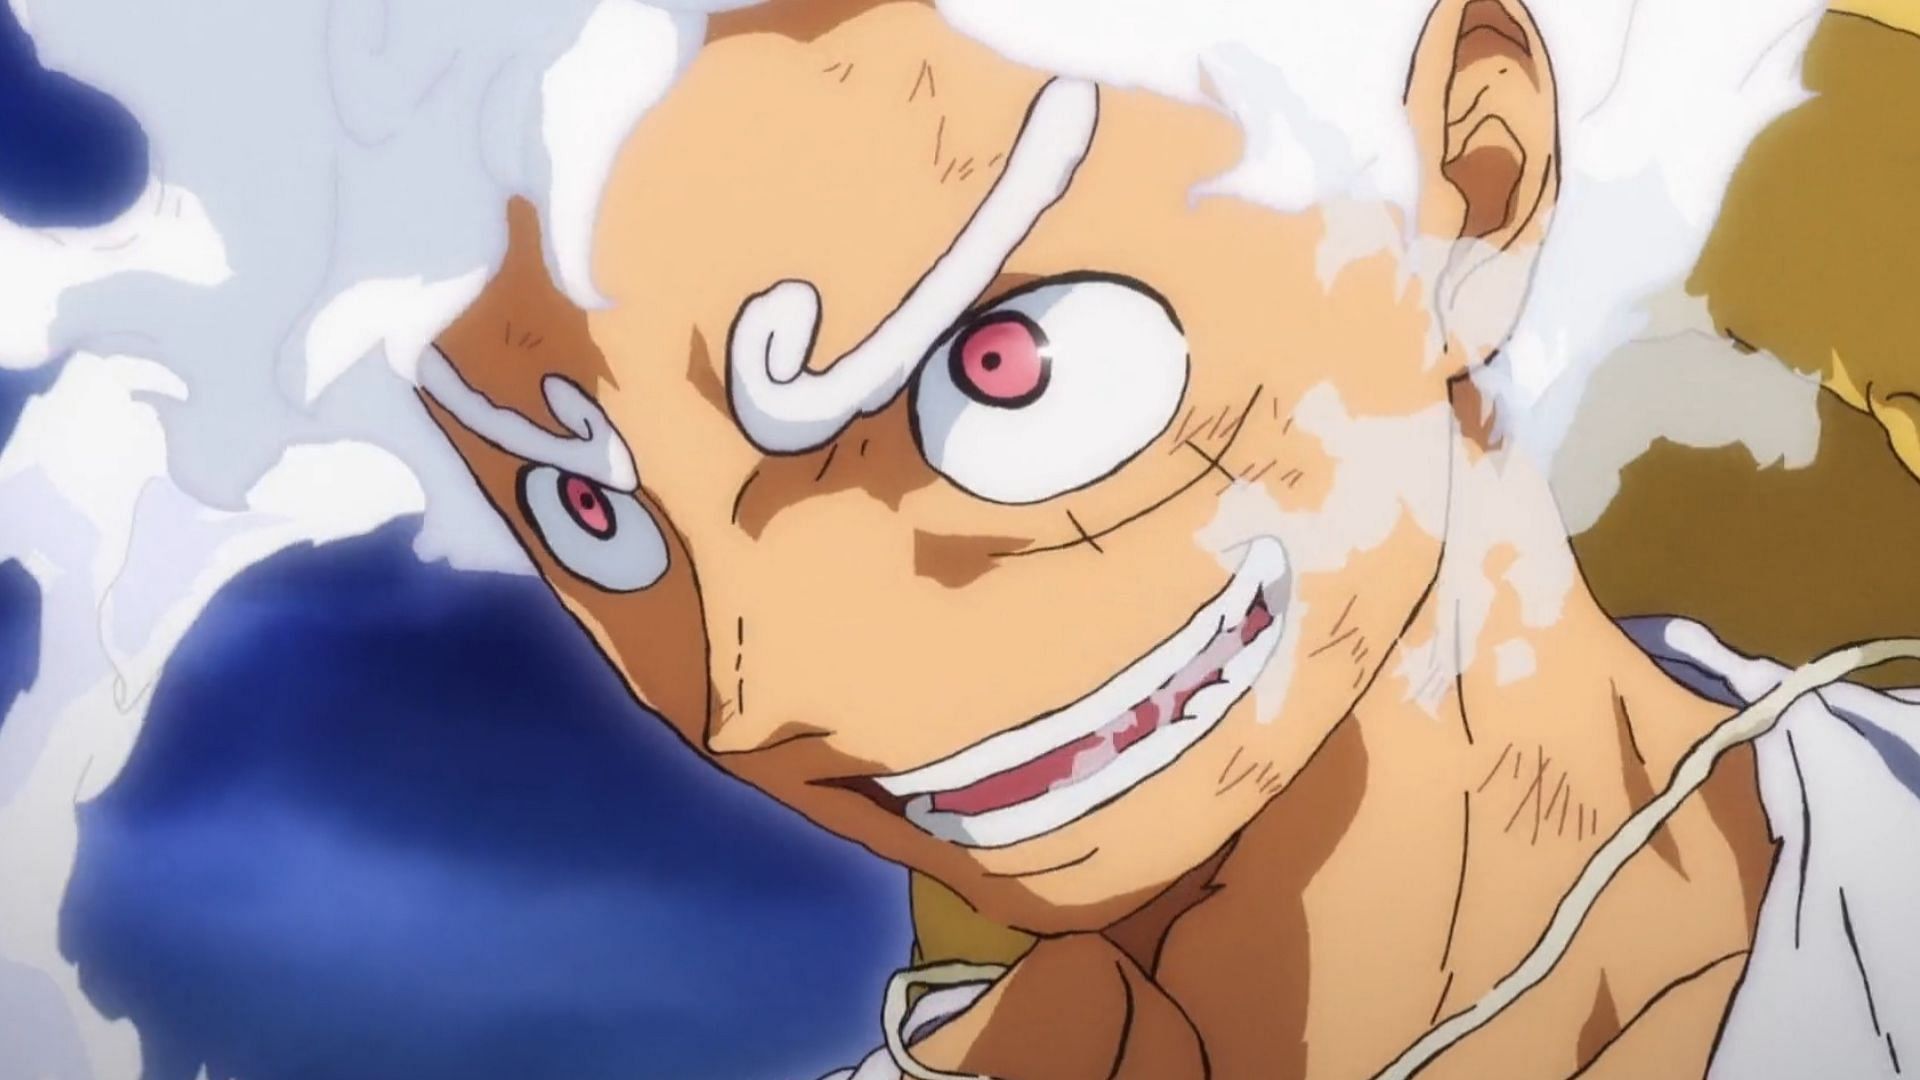 Gear 5 Luffy as seen in One Piece episode 1072 (Image via Toei)